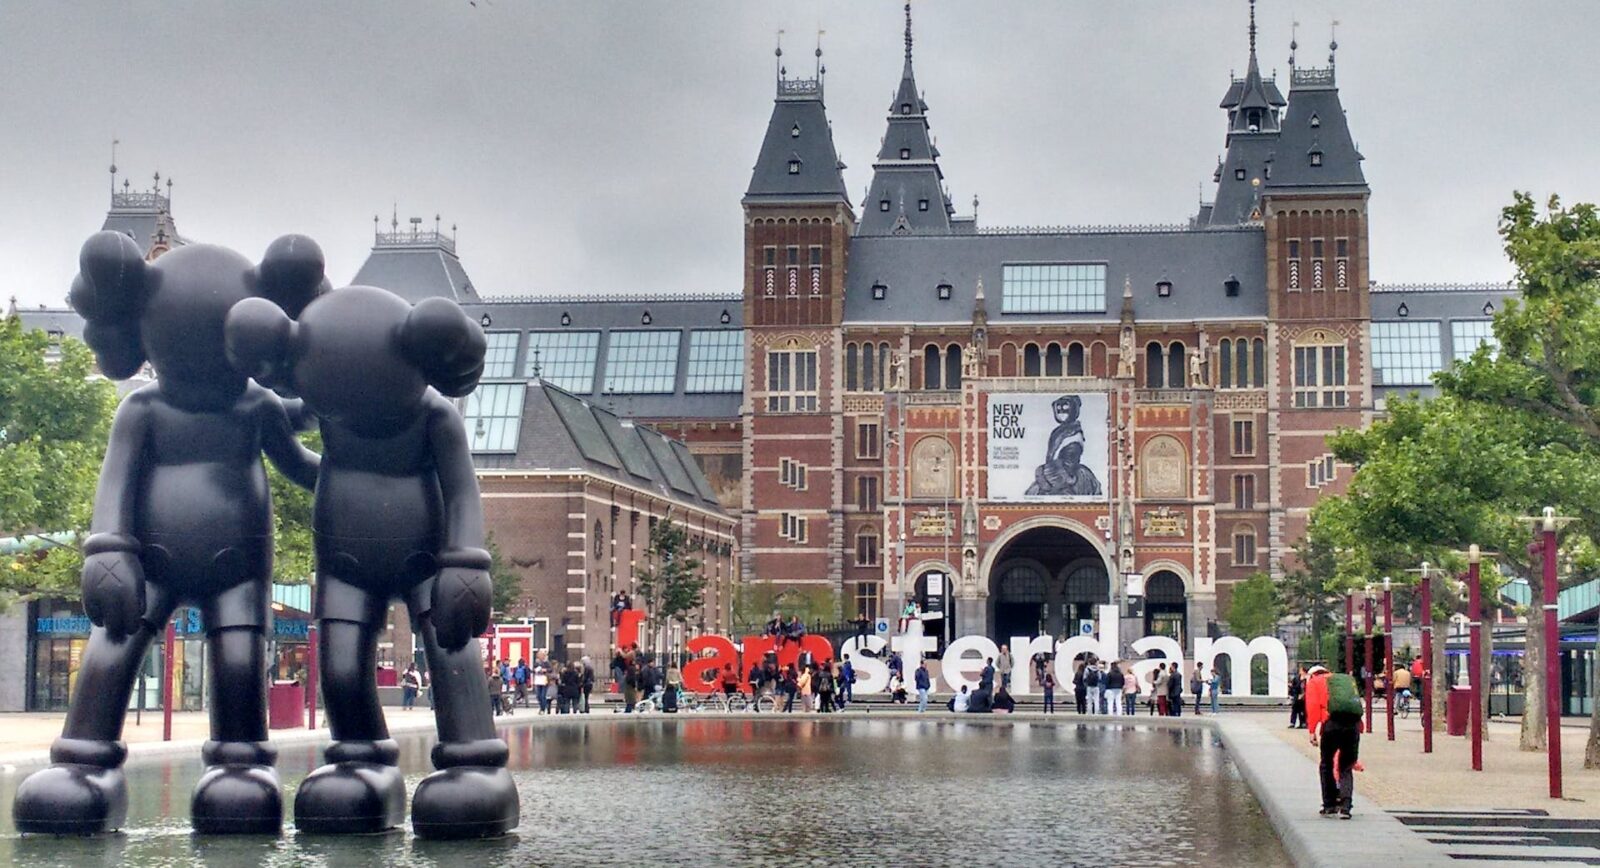 Biudžetui draugiškos lankytinos vietos Amsterdame: Pažinkite miestą už mažiau nei 100 eurų